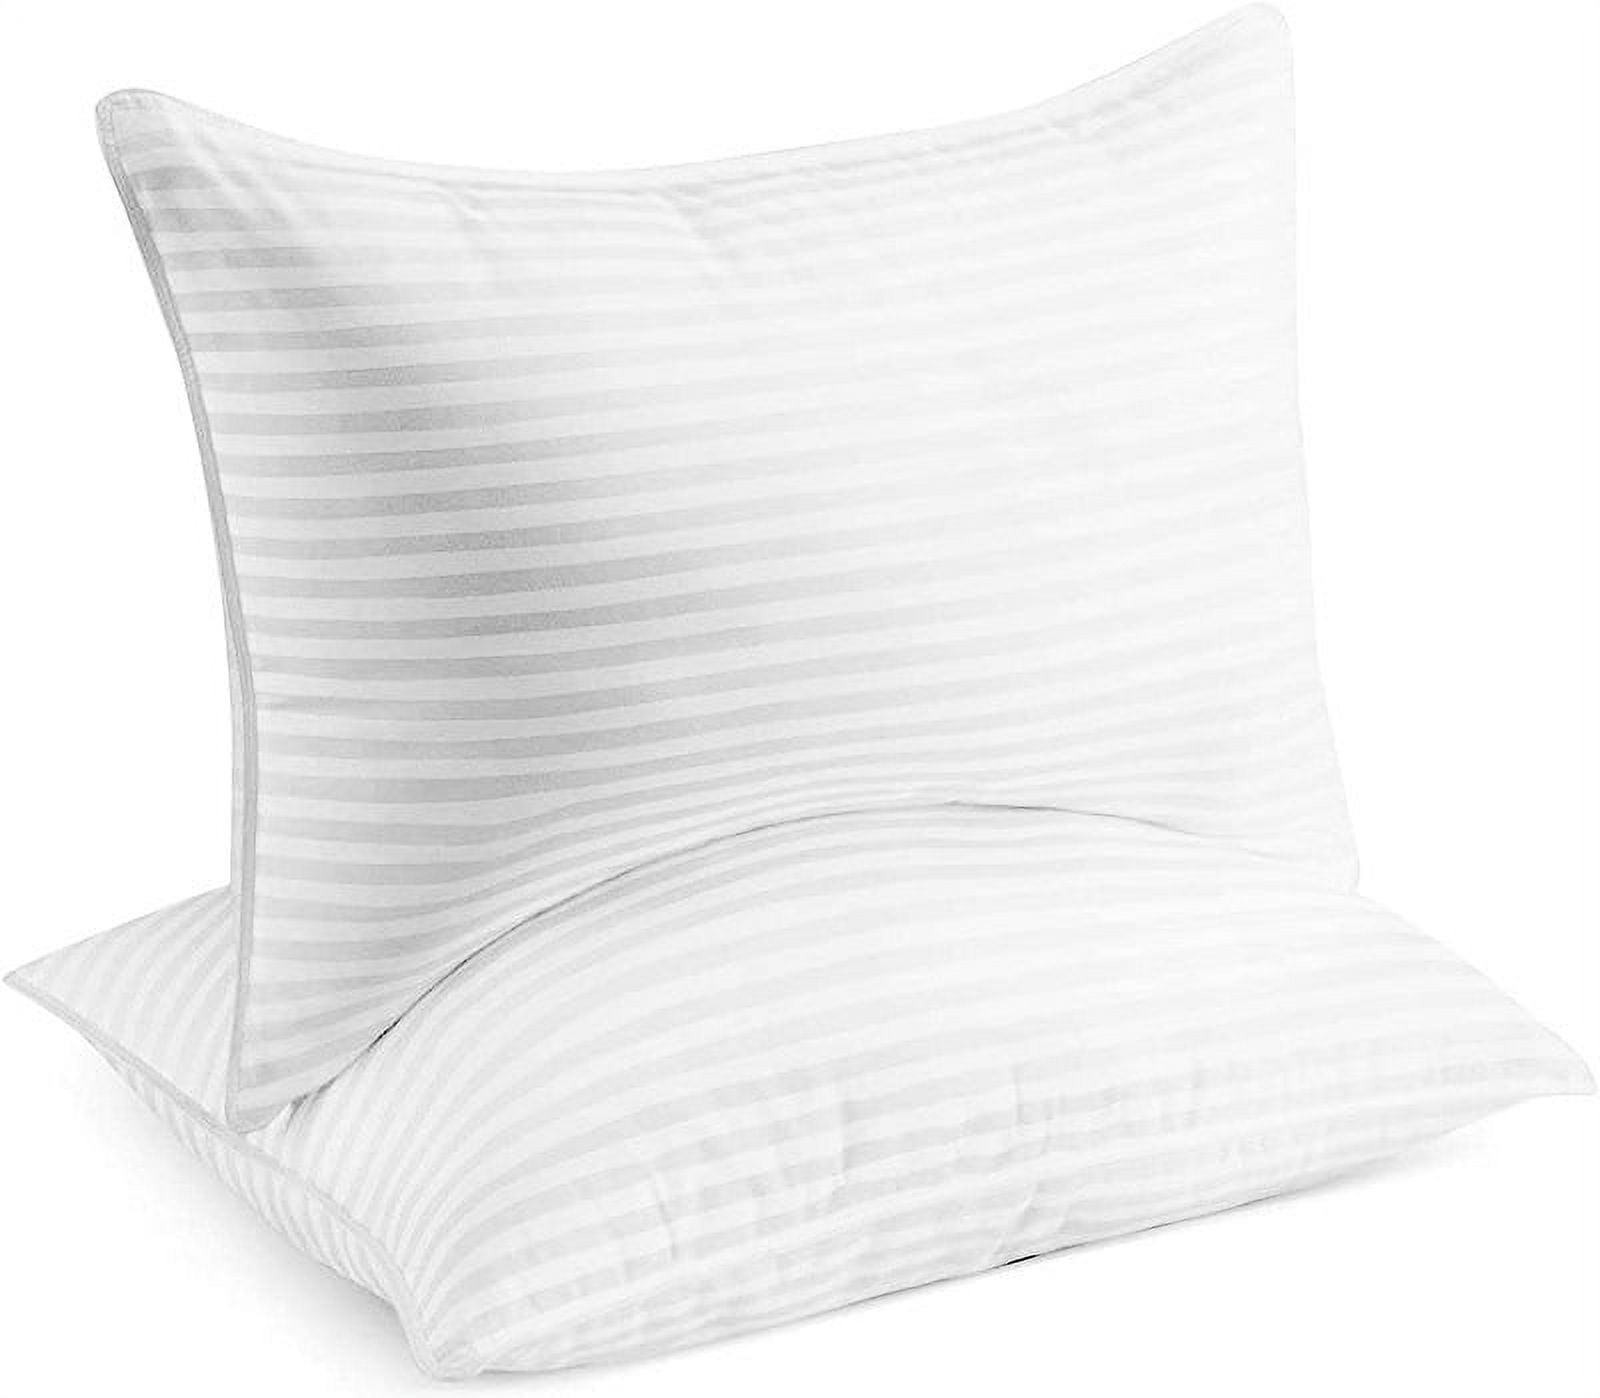 Beckham Hotel Gel Bed Pillow Unbox + Review 